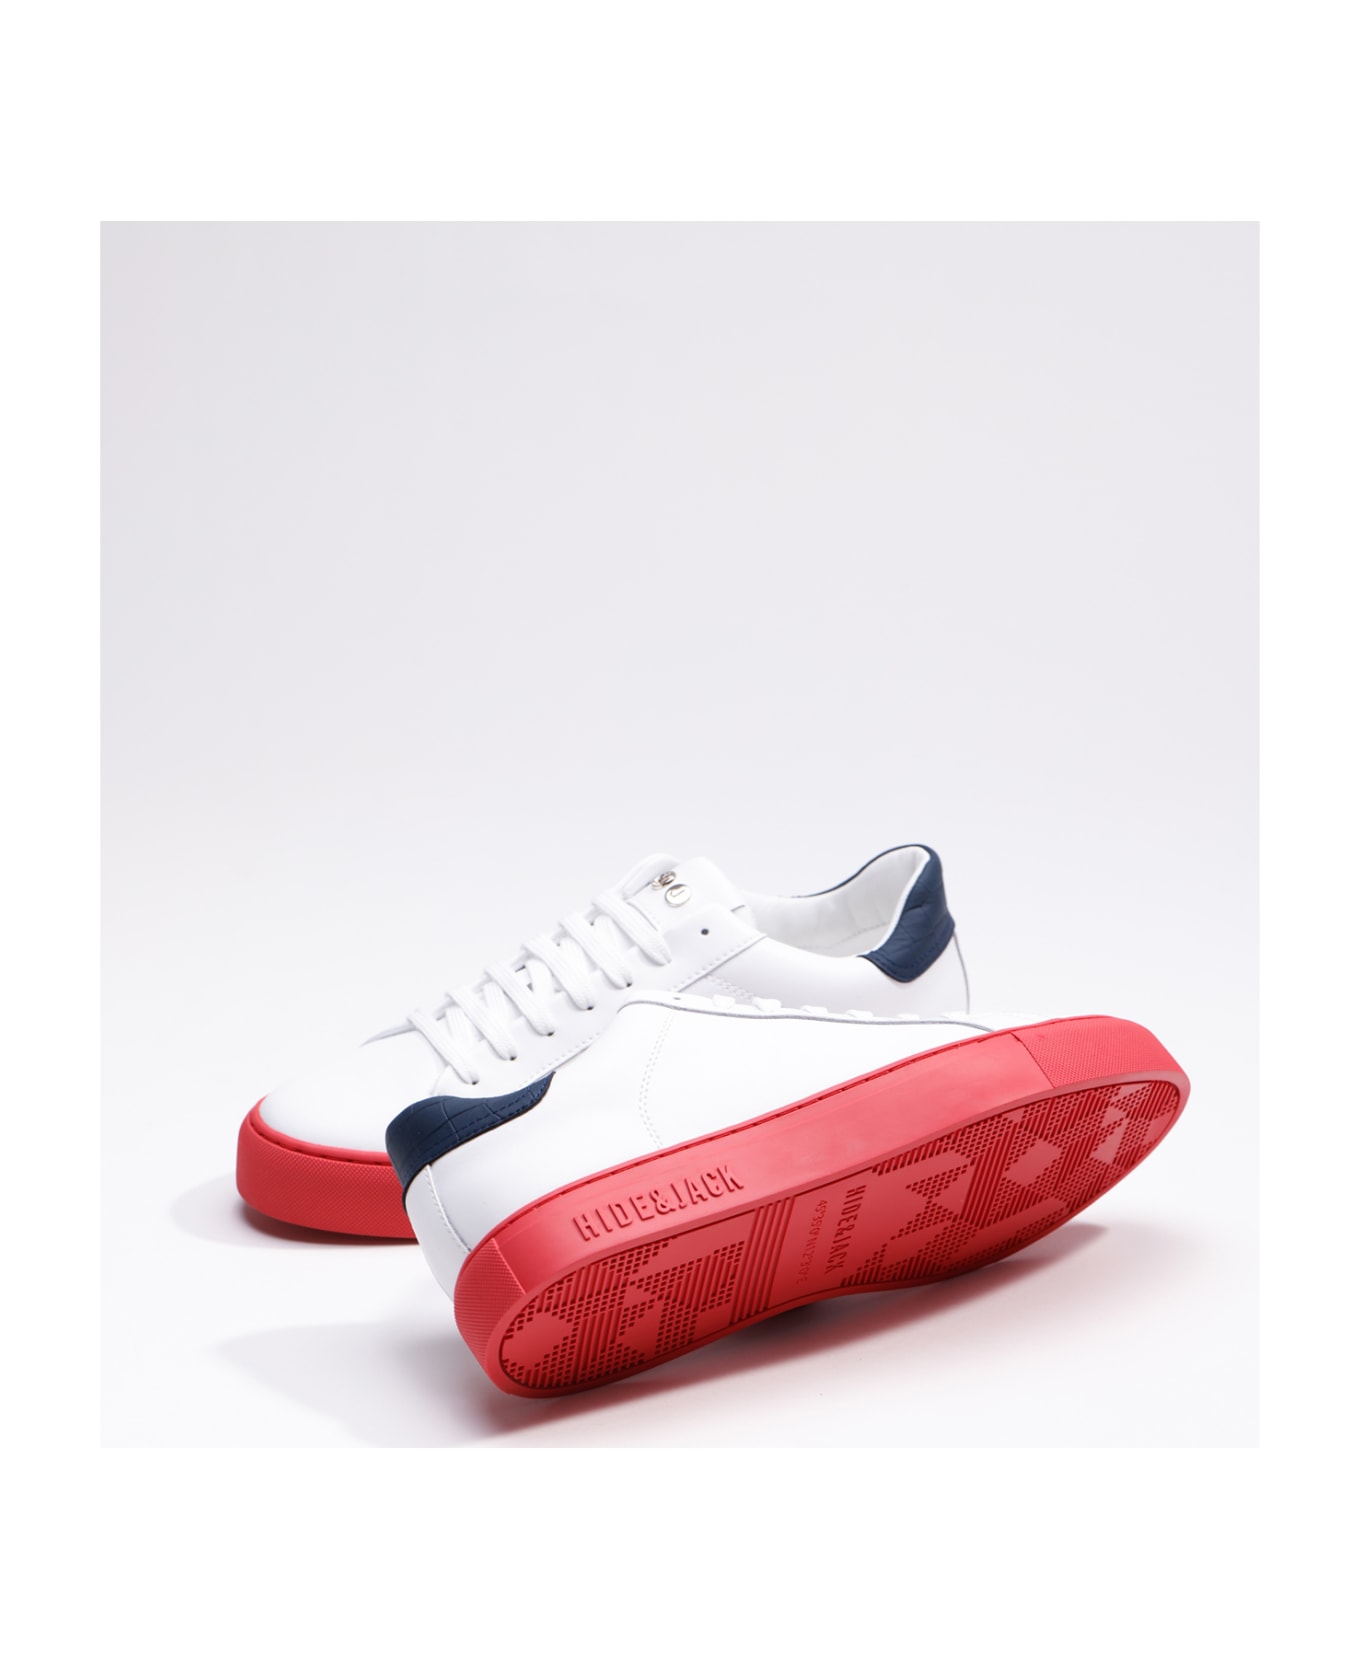 Hide&Jack Low Top Sneaker - Essence Sky Blue Red スニーカー